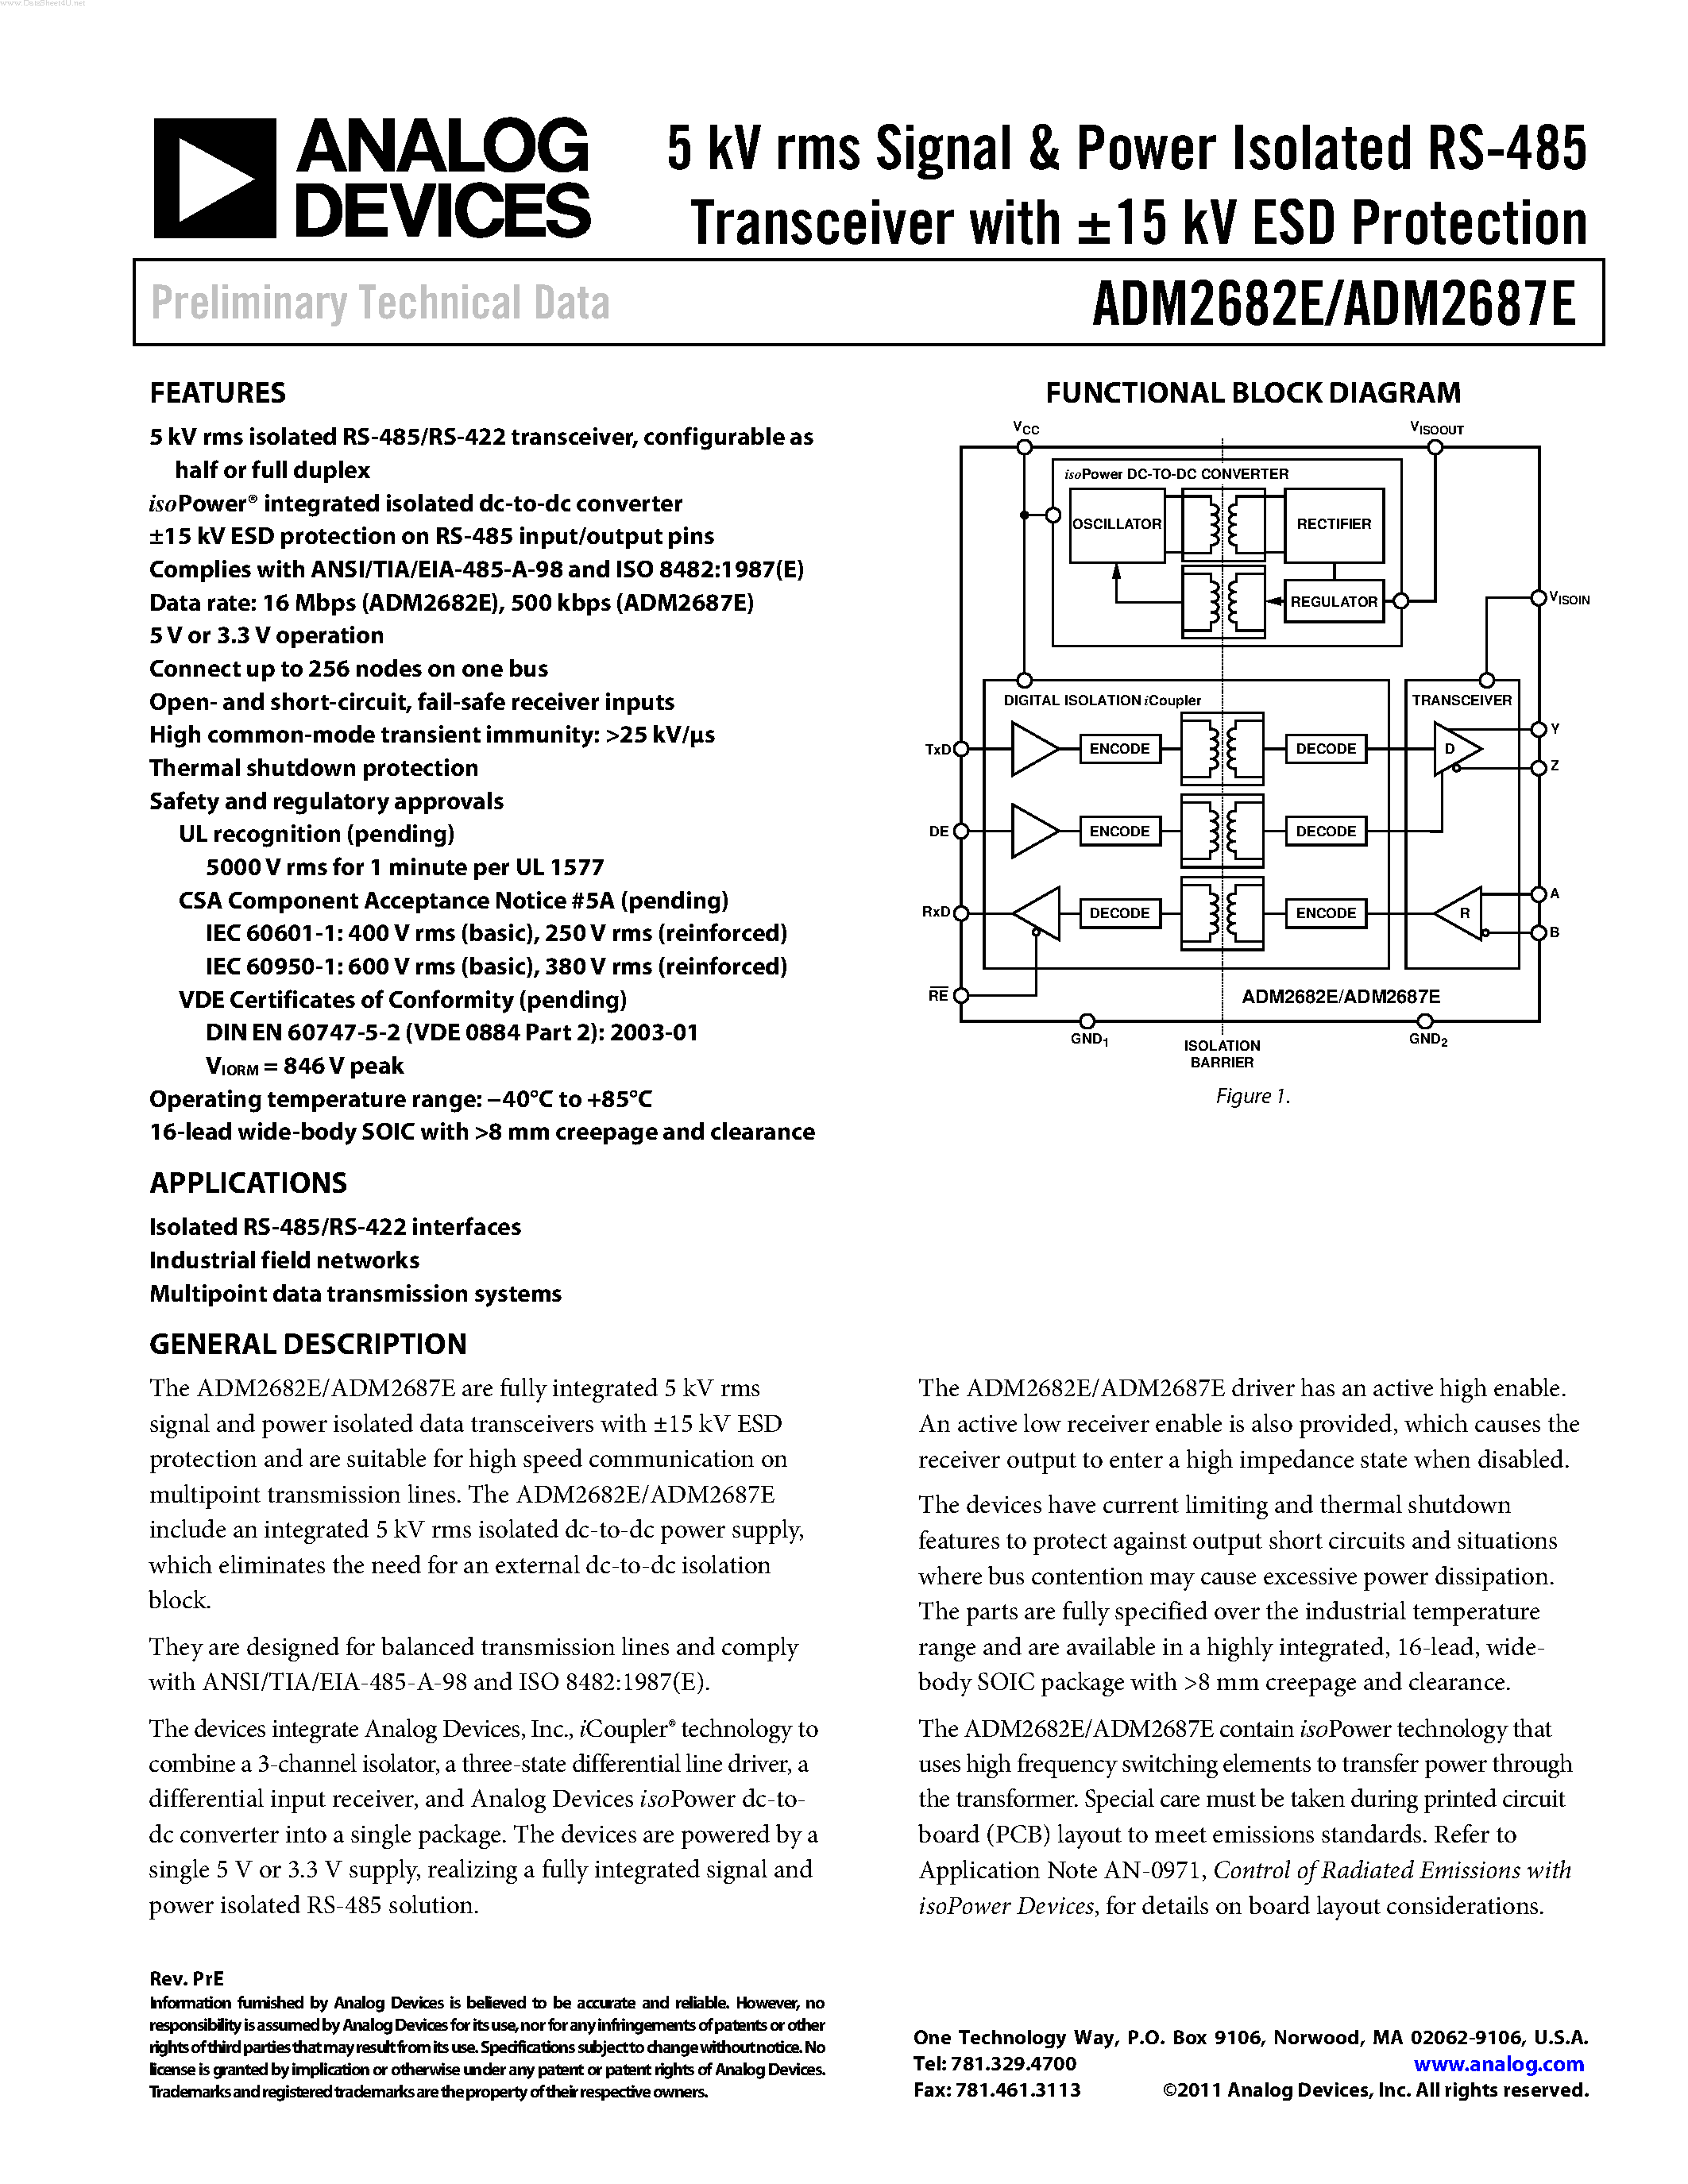 Даташит ADM2682E - (ADM2682E / ADM2687E) 5 kV rms Signal & Power Isolated RS-485 Transceiver страница 1